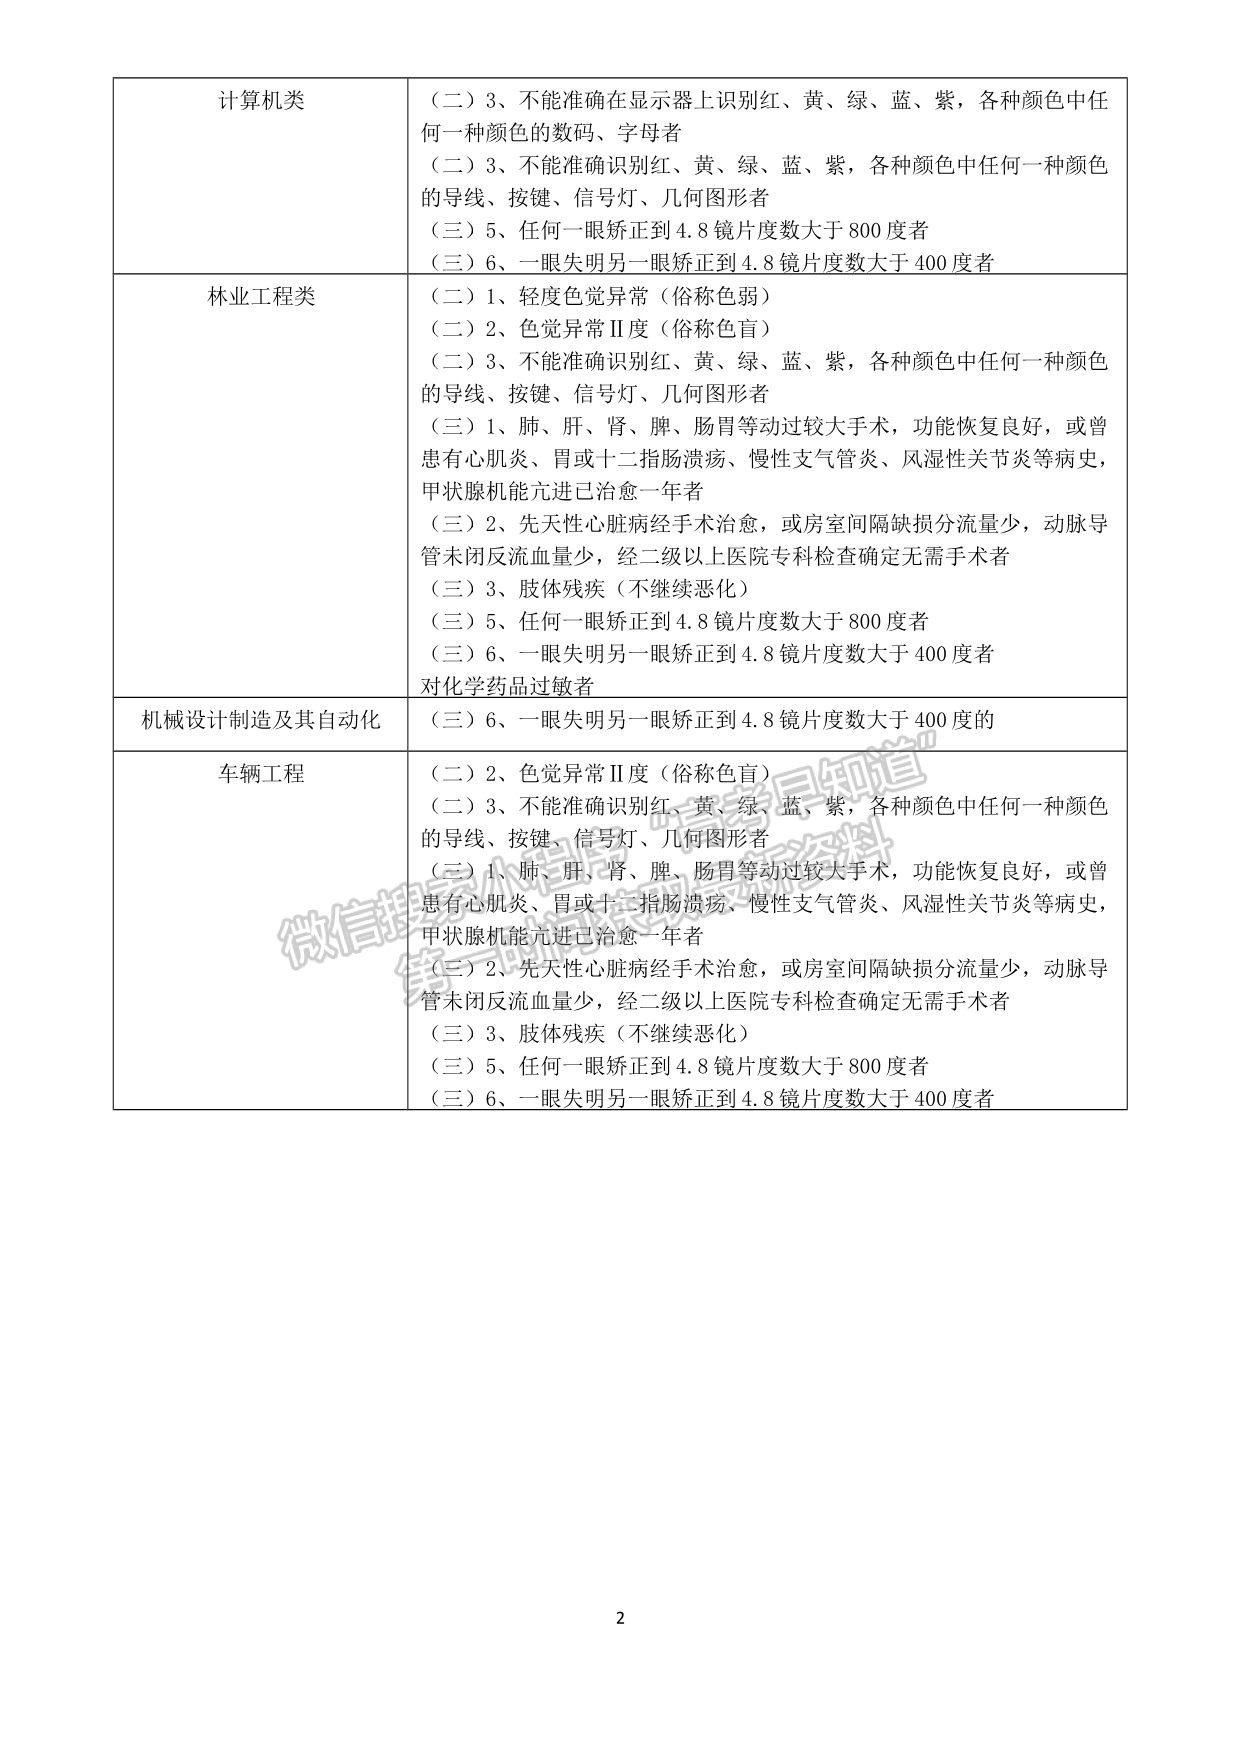 北京林业大学2021年高校专项计划招生简章